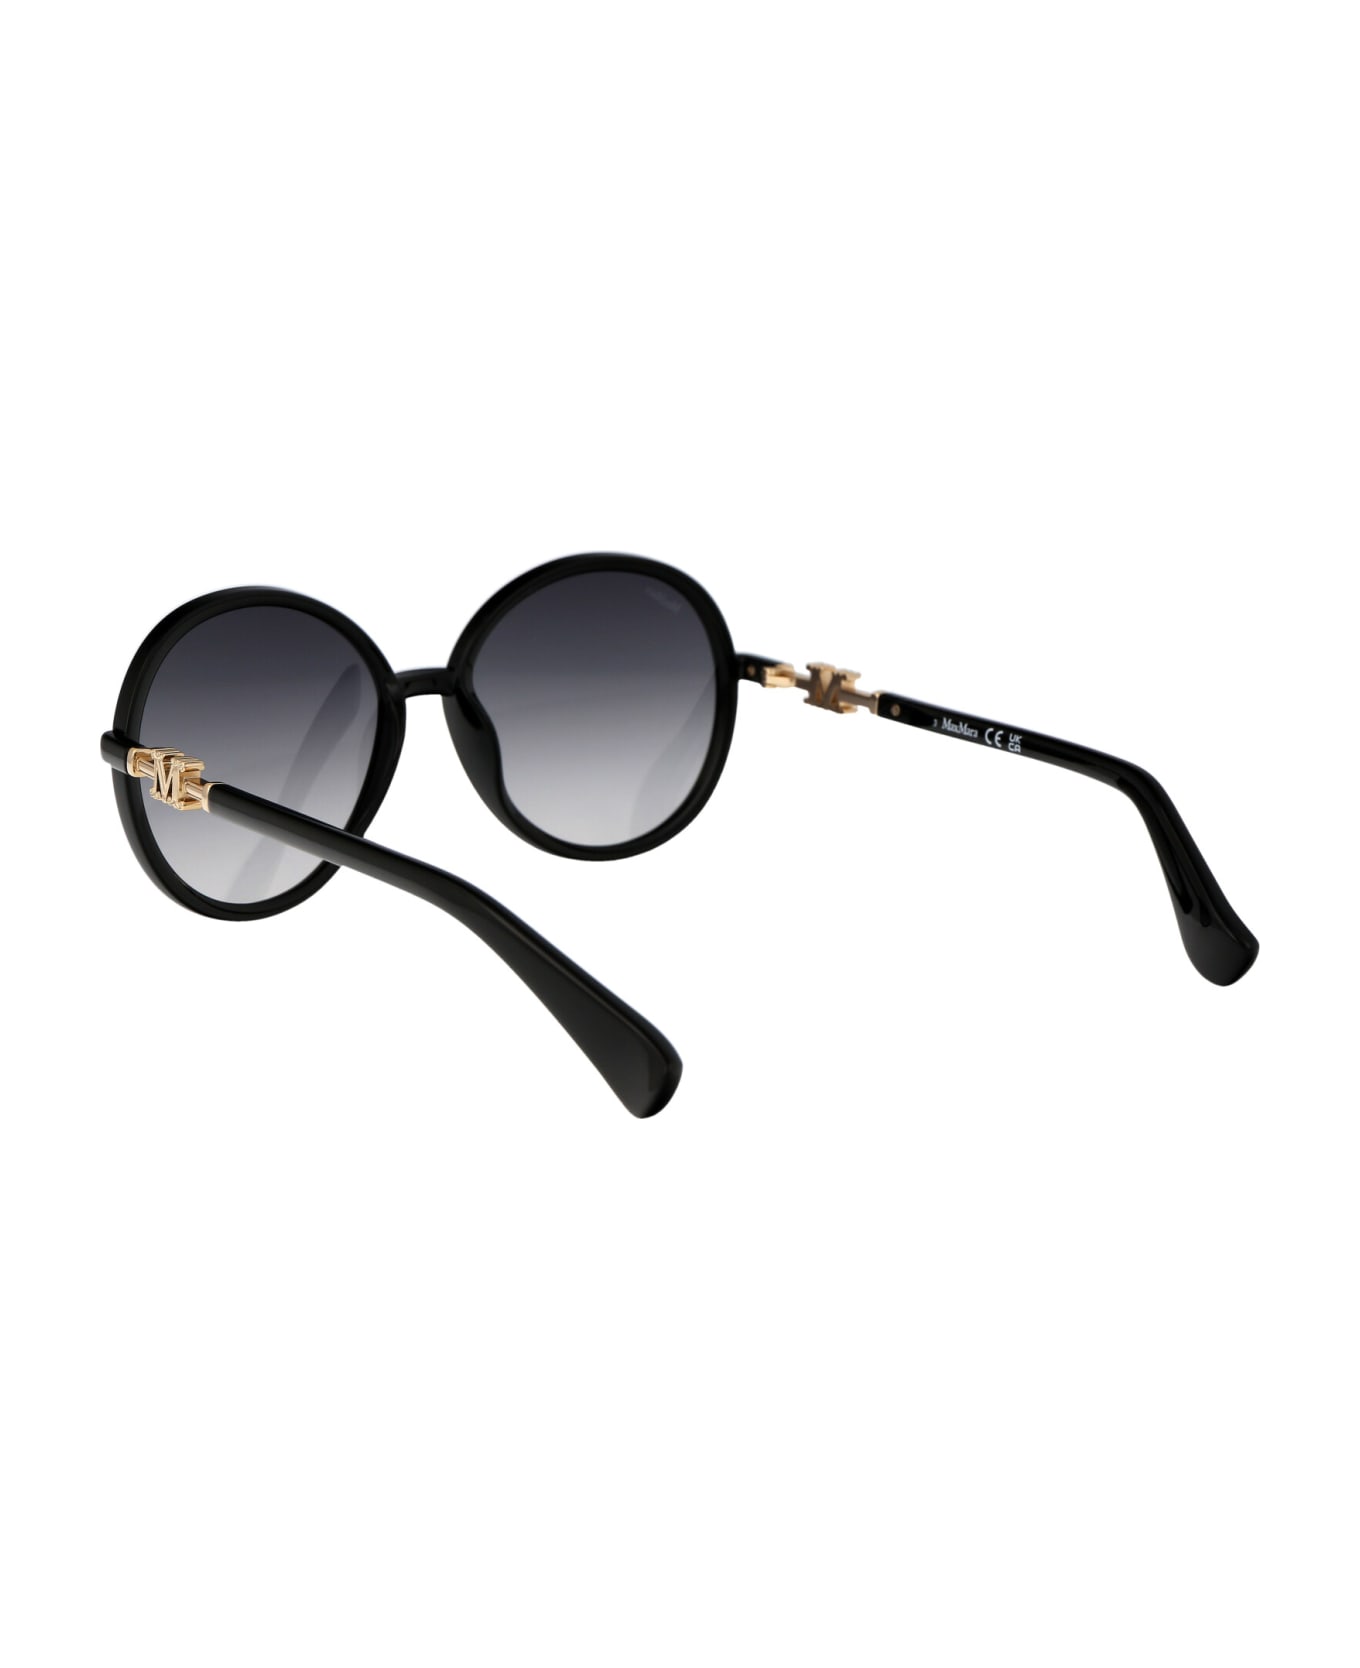 Max Mara Emme15 Sunglasses - 01B Nero Lucido/Fumo Grad